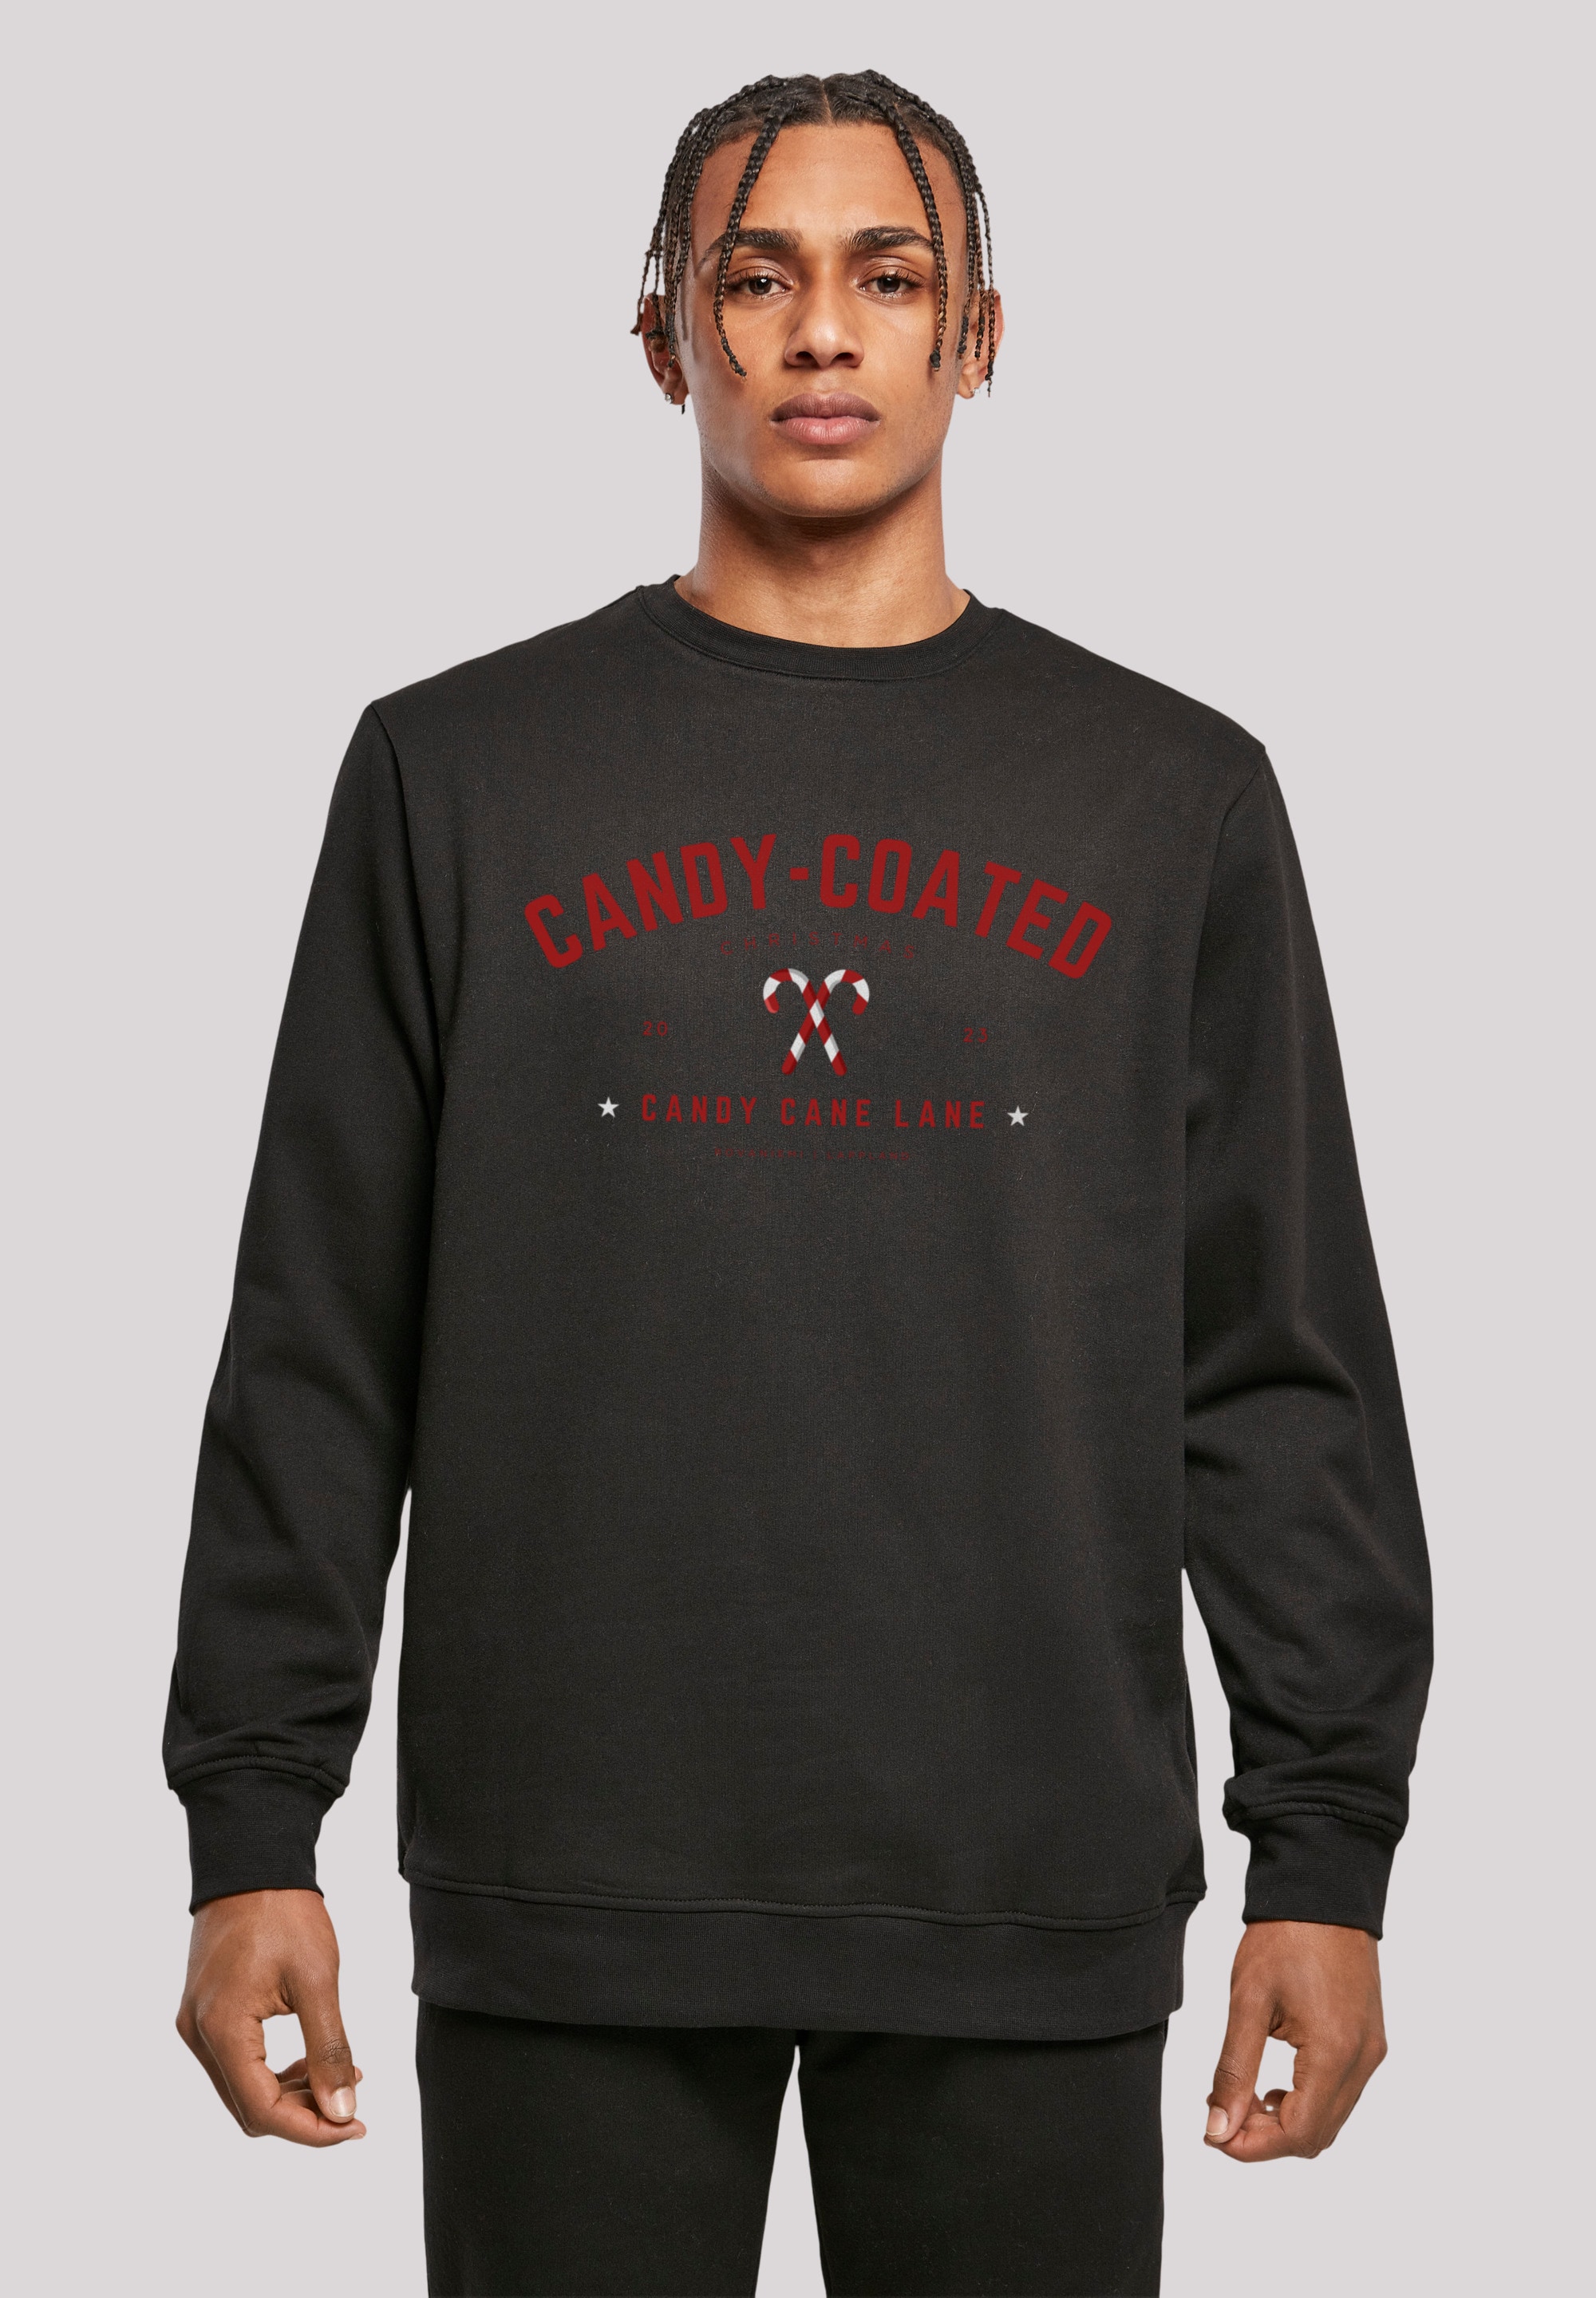 F4NT4STIC Sweatshirt »Weihnachten Candy Coated Christmas«, Weihnachten, Geschenk, Logo